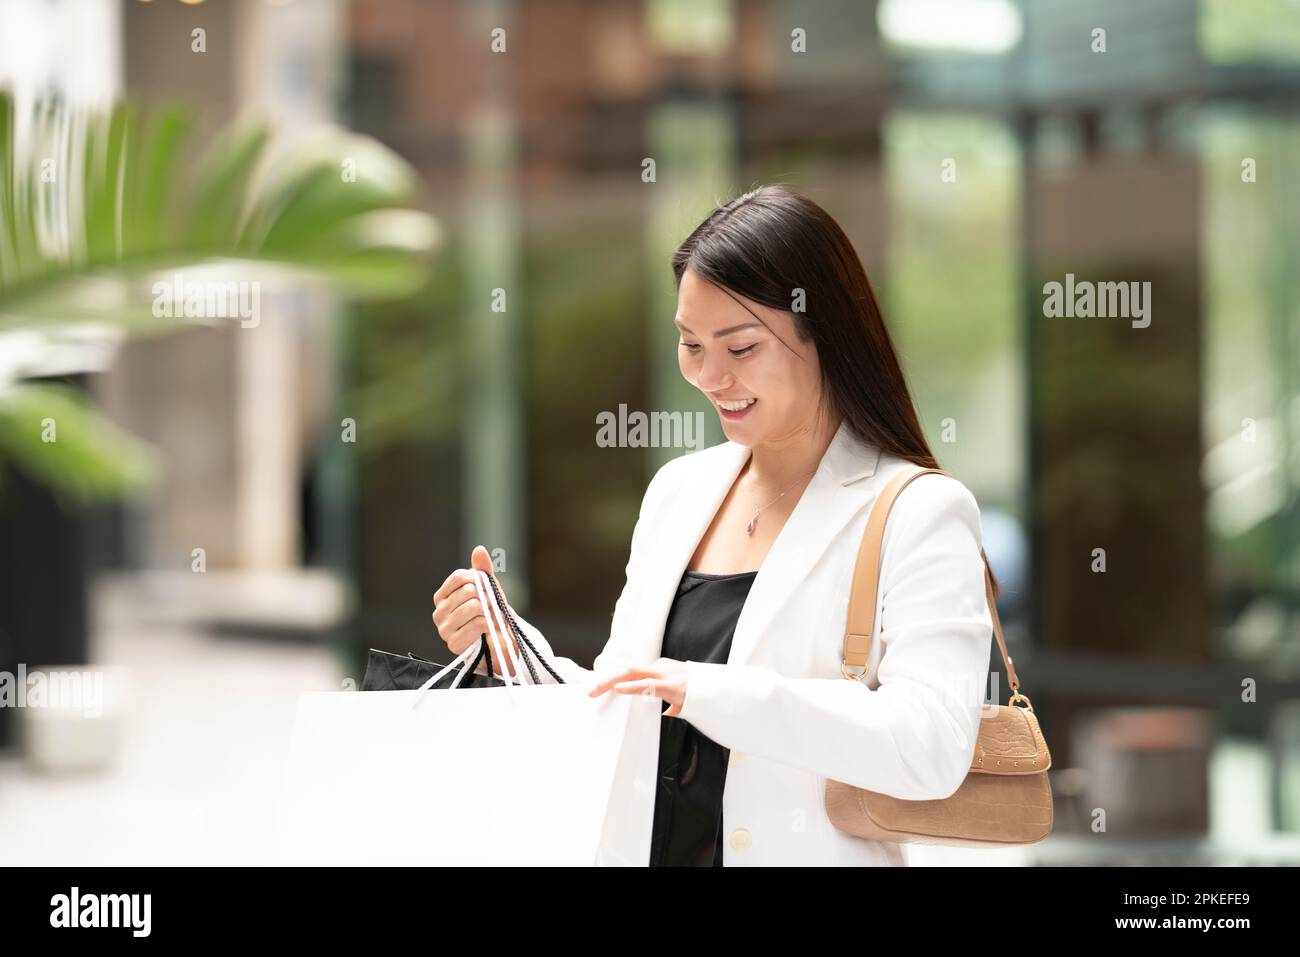 Eine Frau, die beim Einkaufen in eine Einkaufstasche guckt und ein Lächeln im Gesicht hat Stockfoto